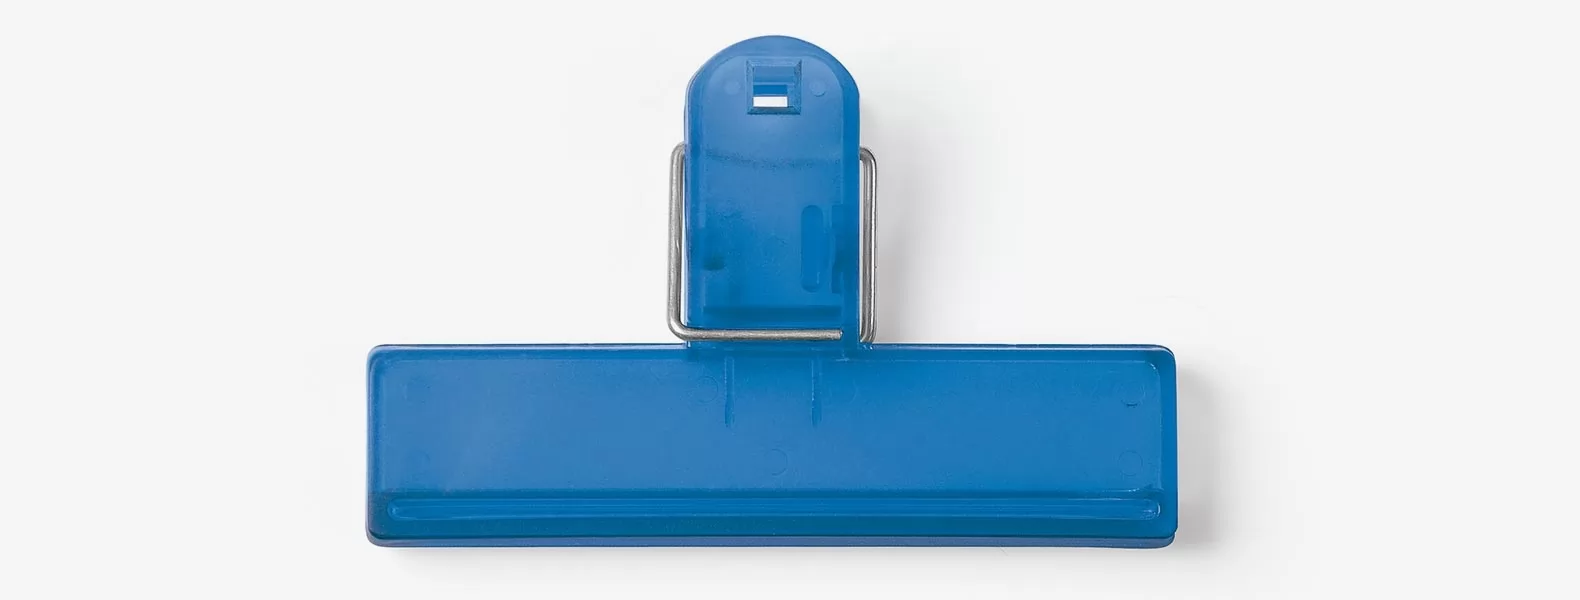 Prendedor De Embalagem Em Poliestireno - Azul